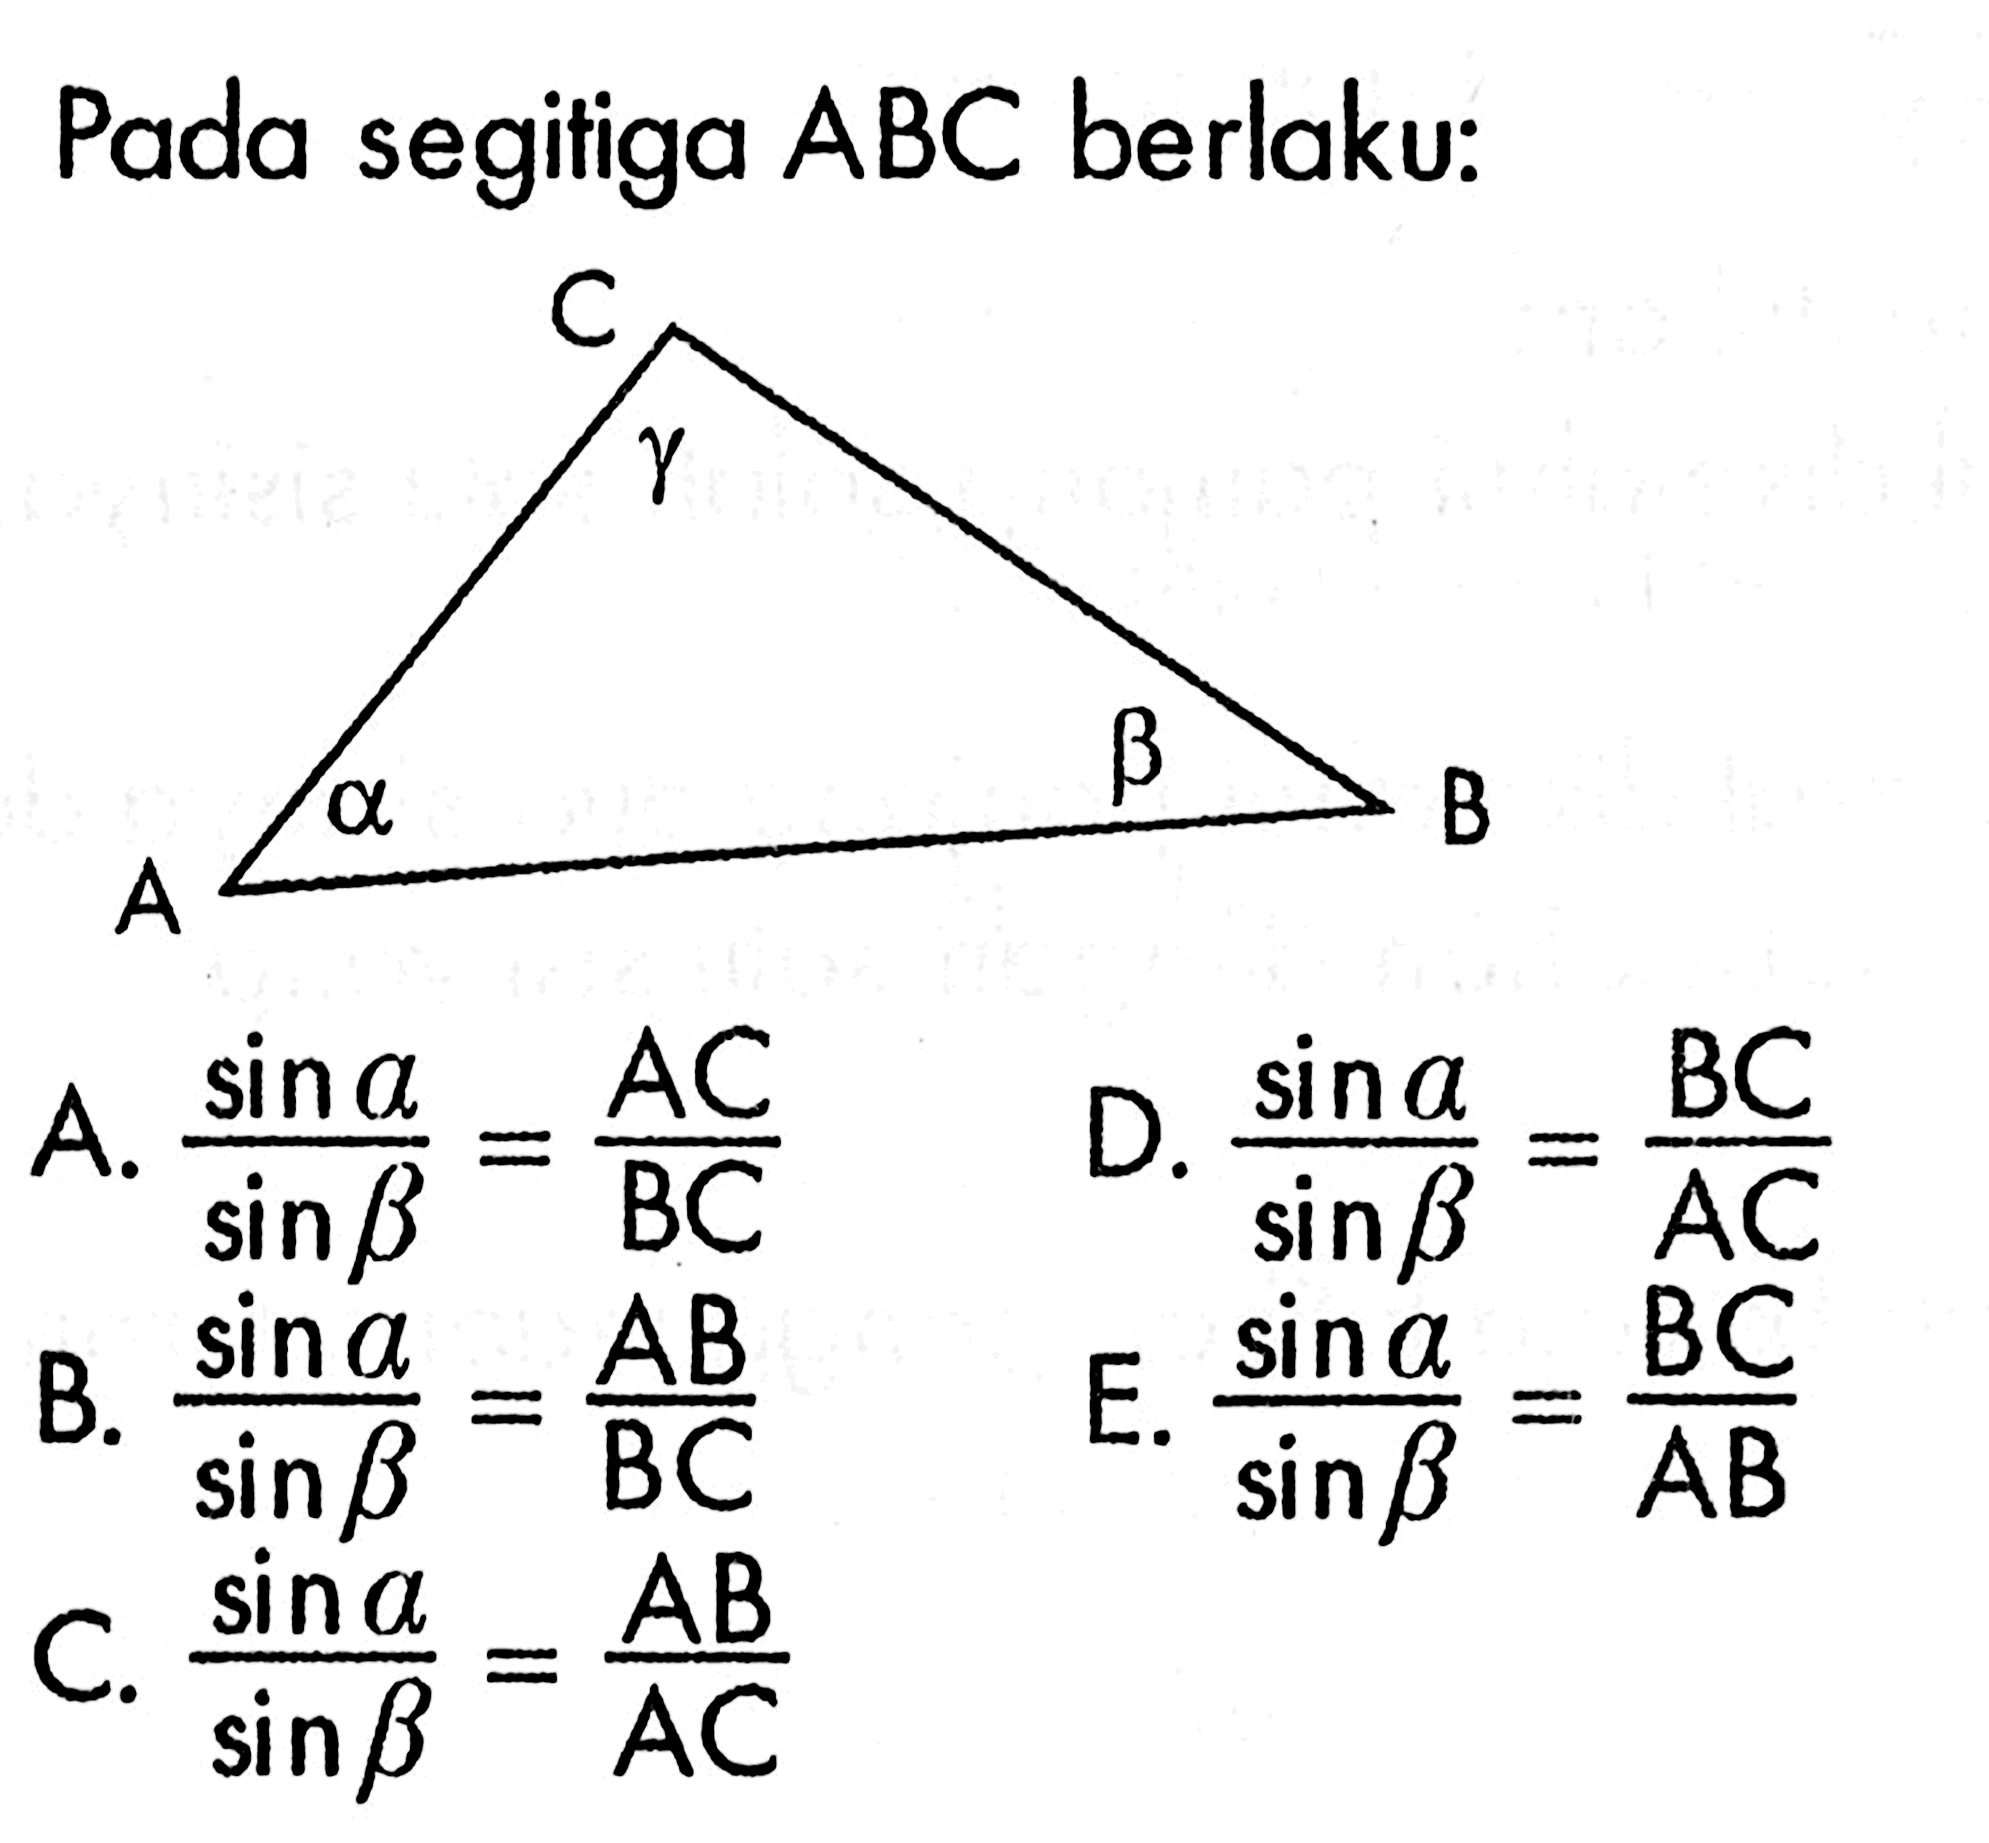 Pada segitiga  ABC  berlaku:A.  sin a /sin b =AC/BC D.  sin a /sin b =BC/AC B.  sin a /sin b =AB/BC E.  sin a /sin b =BC/AB C.  sin a /sin b =AB/AC 